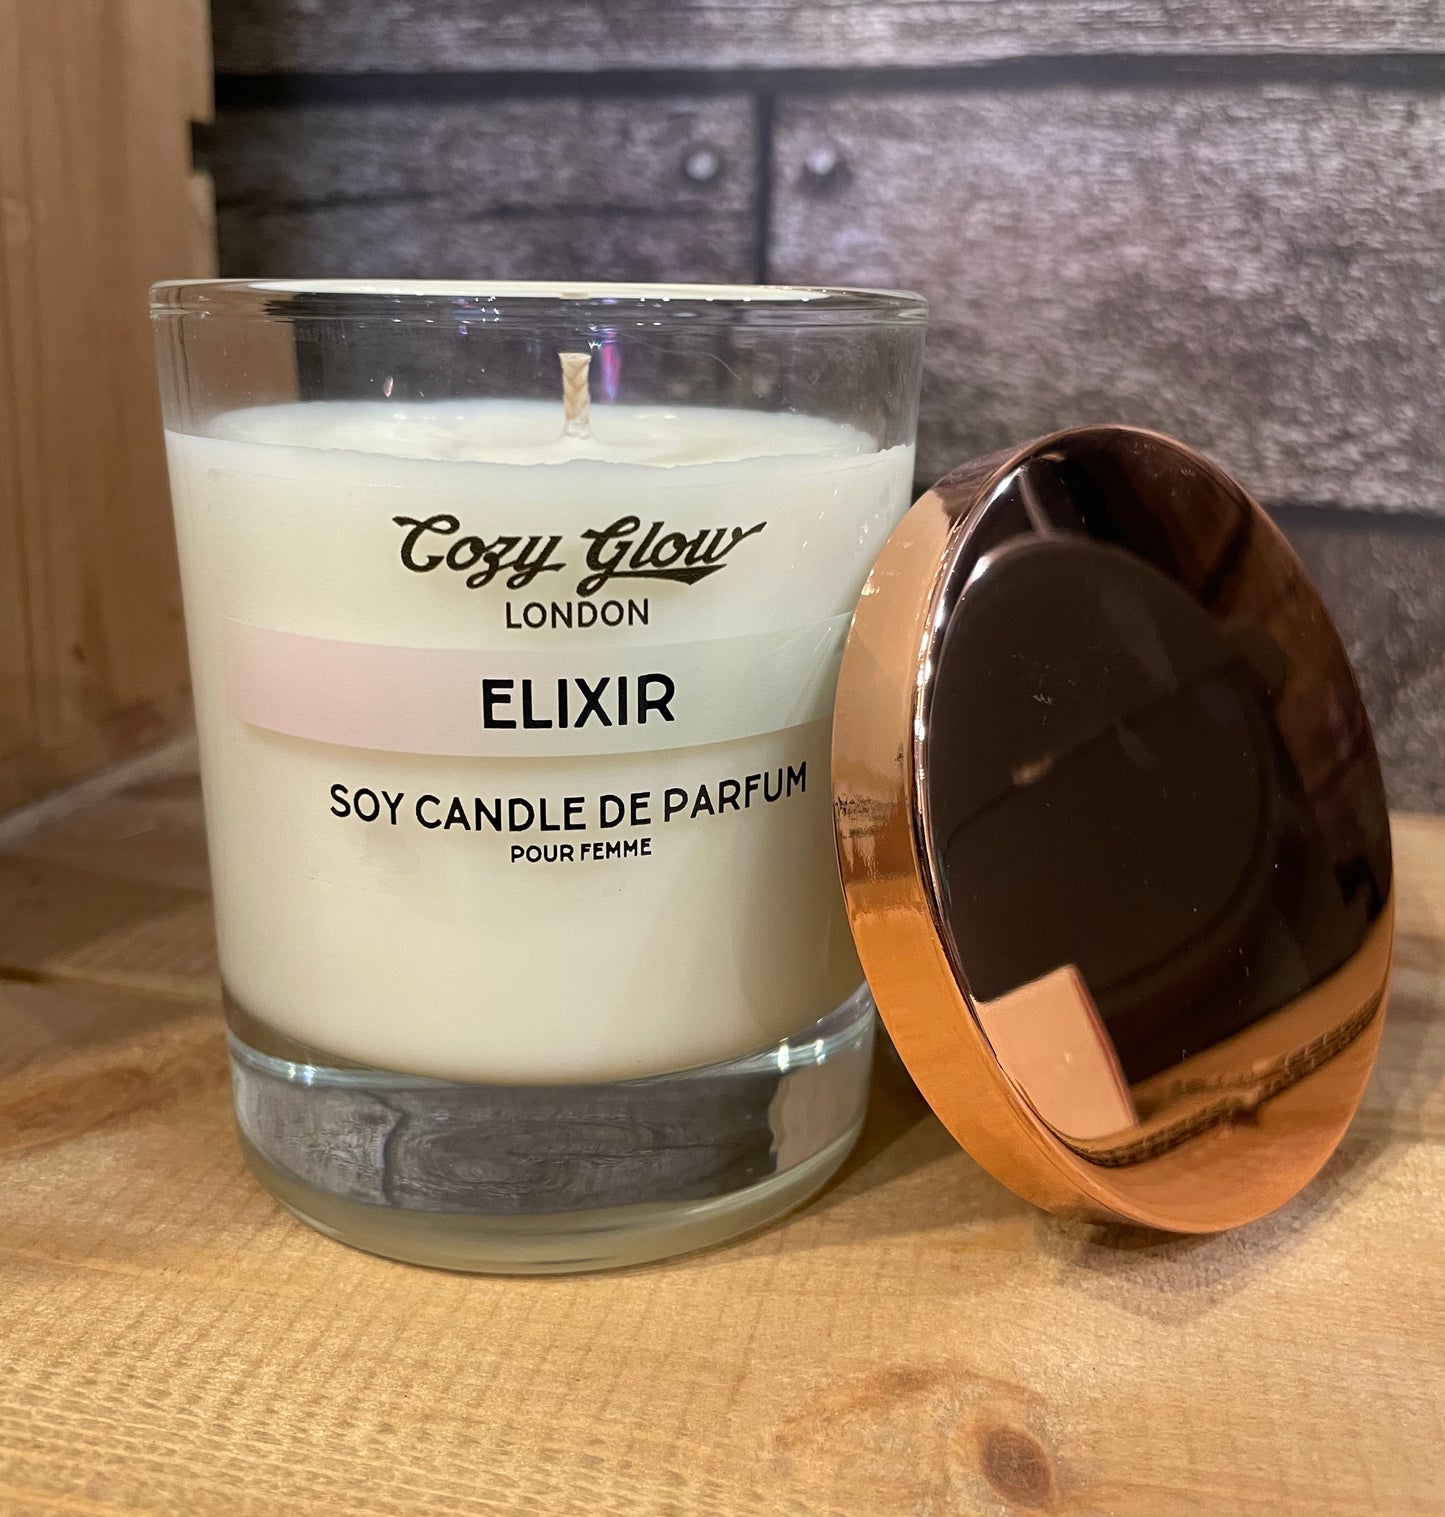 Elixir Soy Candle De Parfum